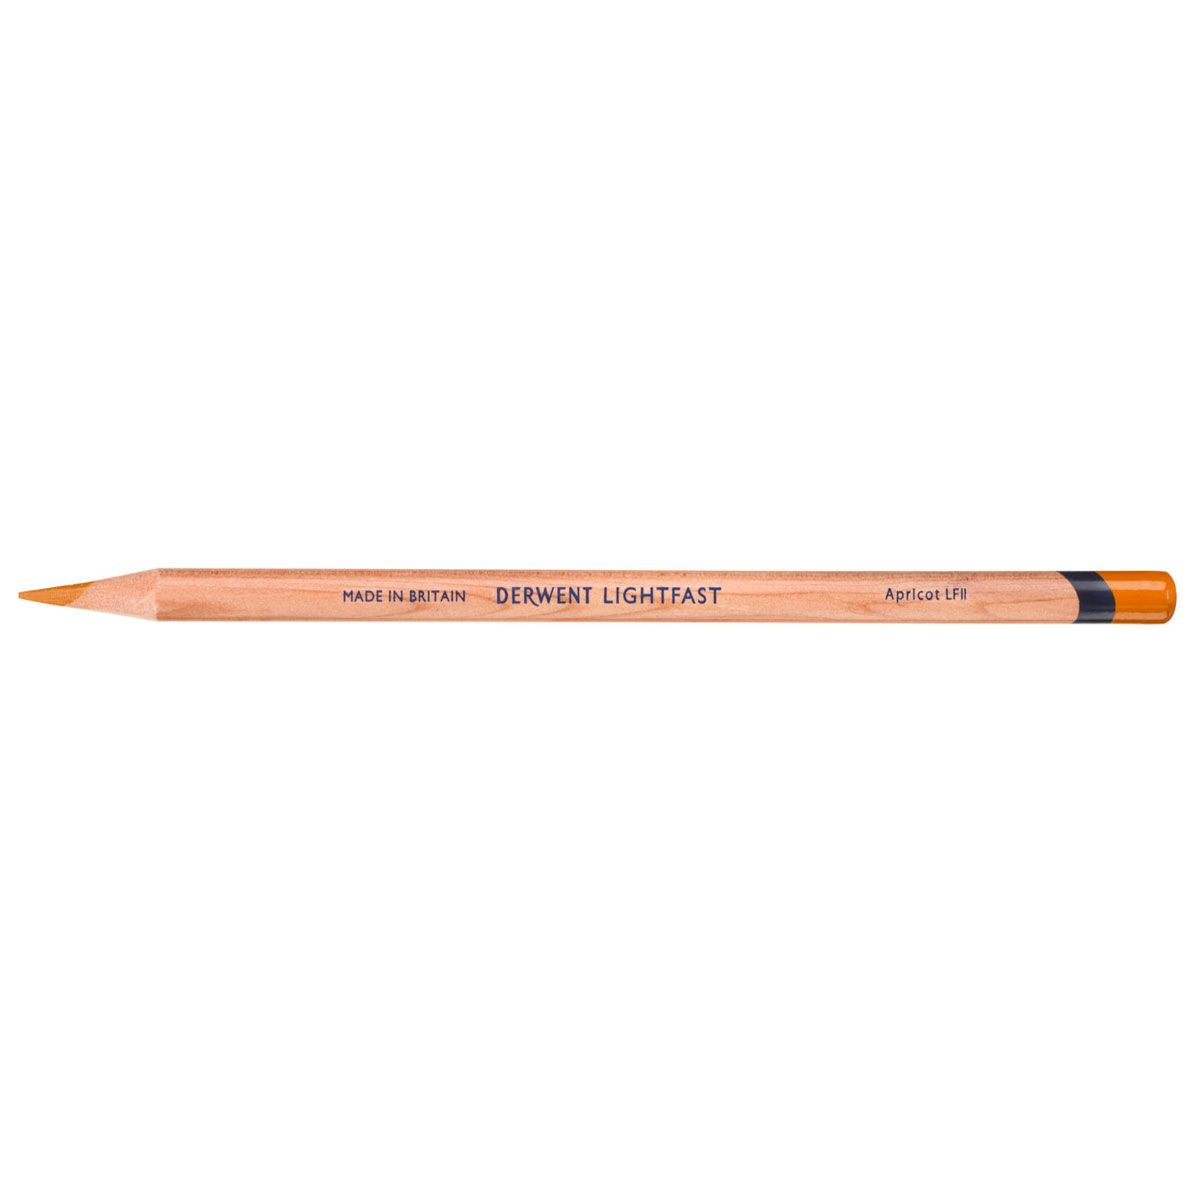 NEW Derwent Lightfast Pencil Colour: Apricot